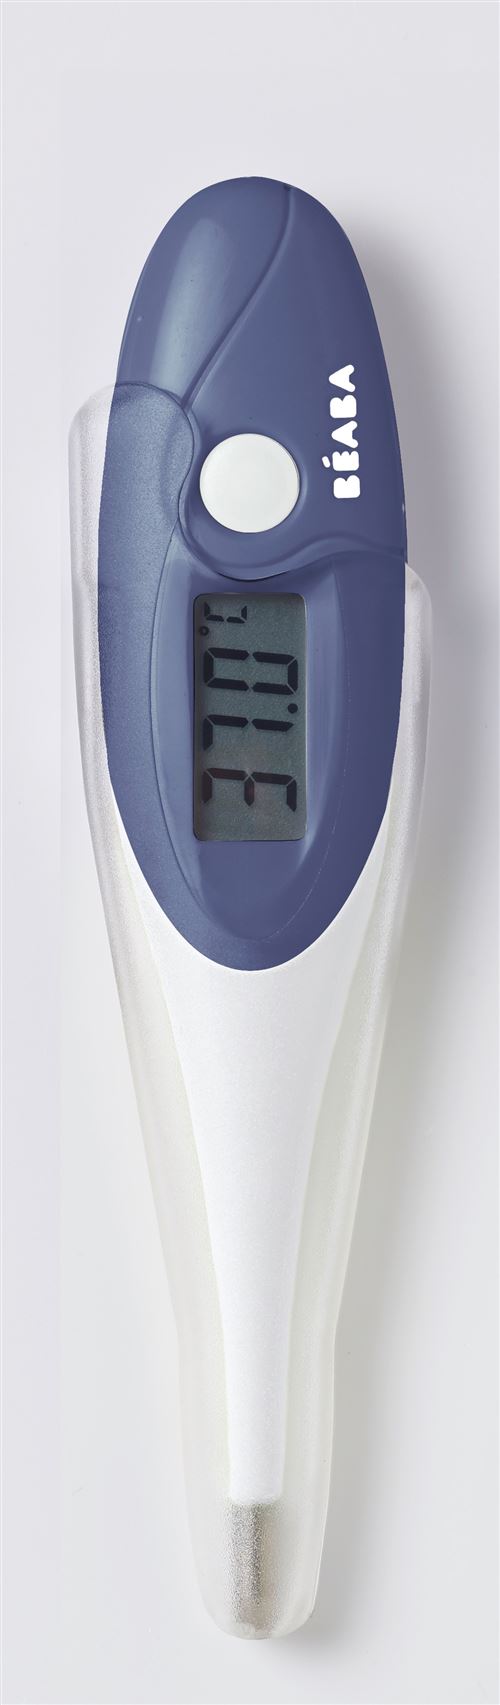 Thermomètre bébé Beaba Thermomètre 'Thermobip' à embout souple Béaba  coloris Bleu nuit